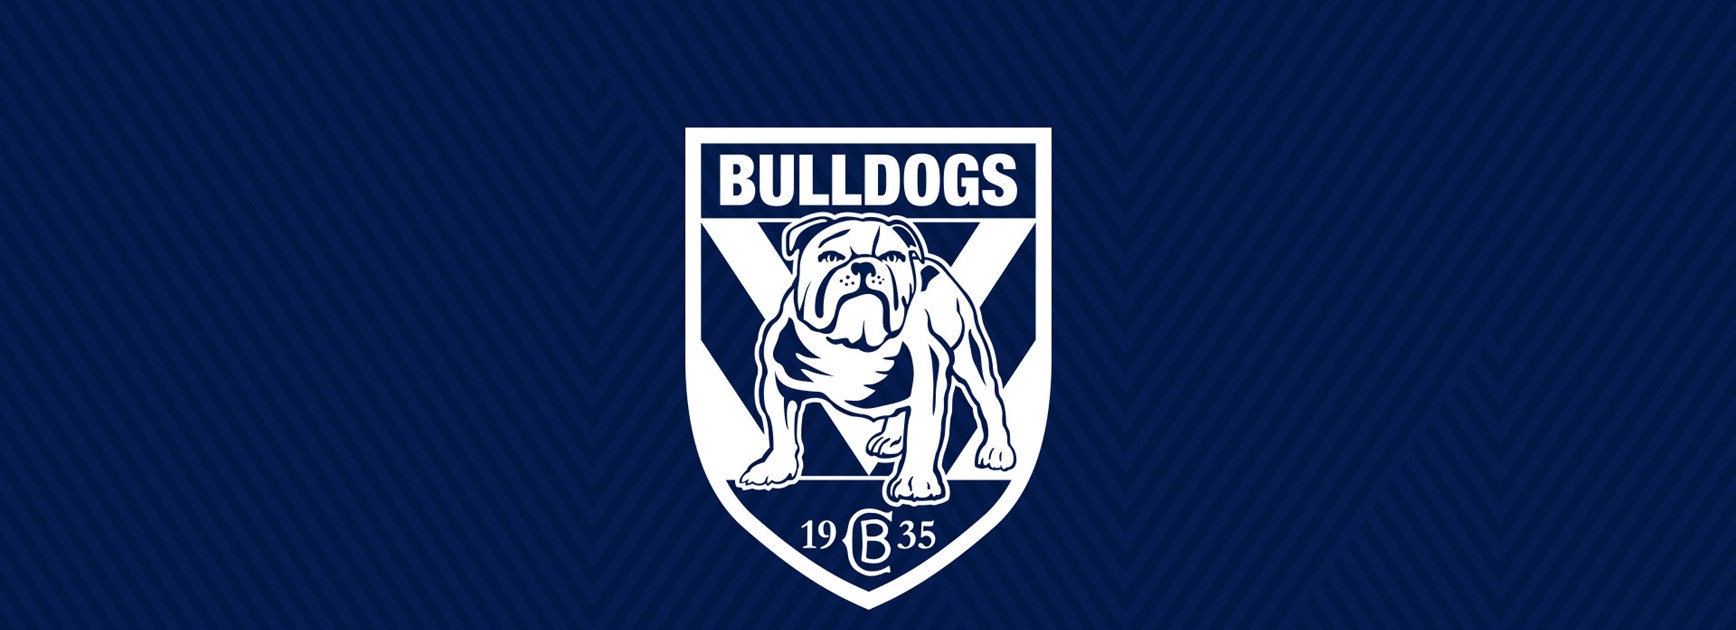 2019 Bulldogs Under 15 Development Squad announced